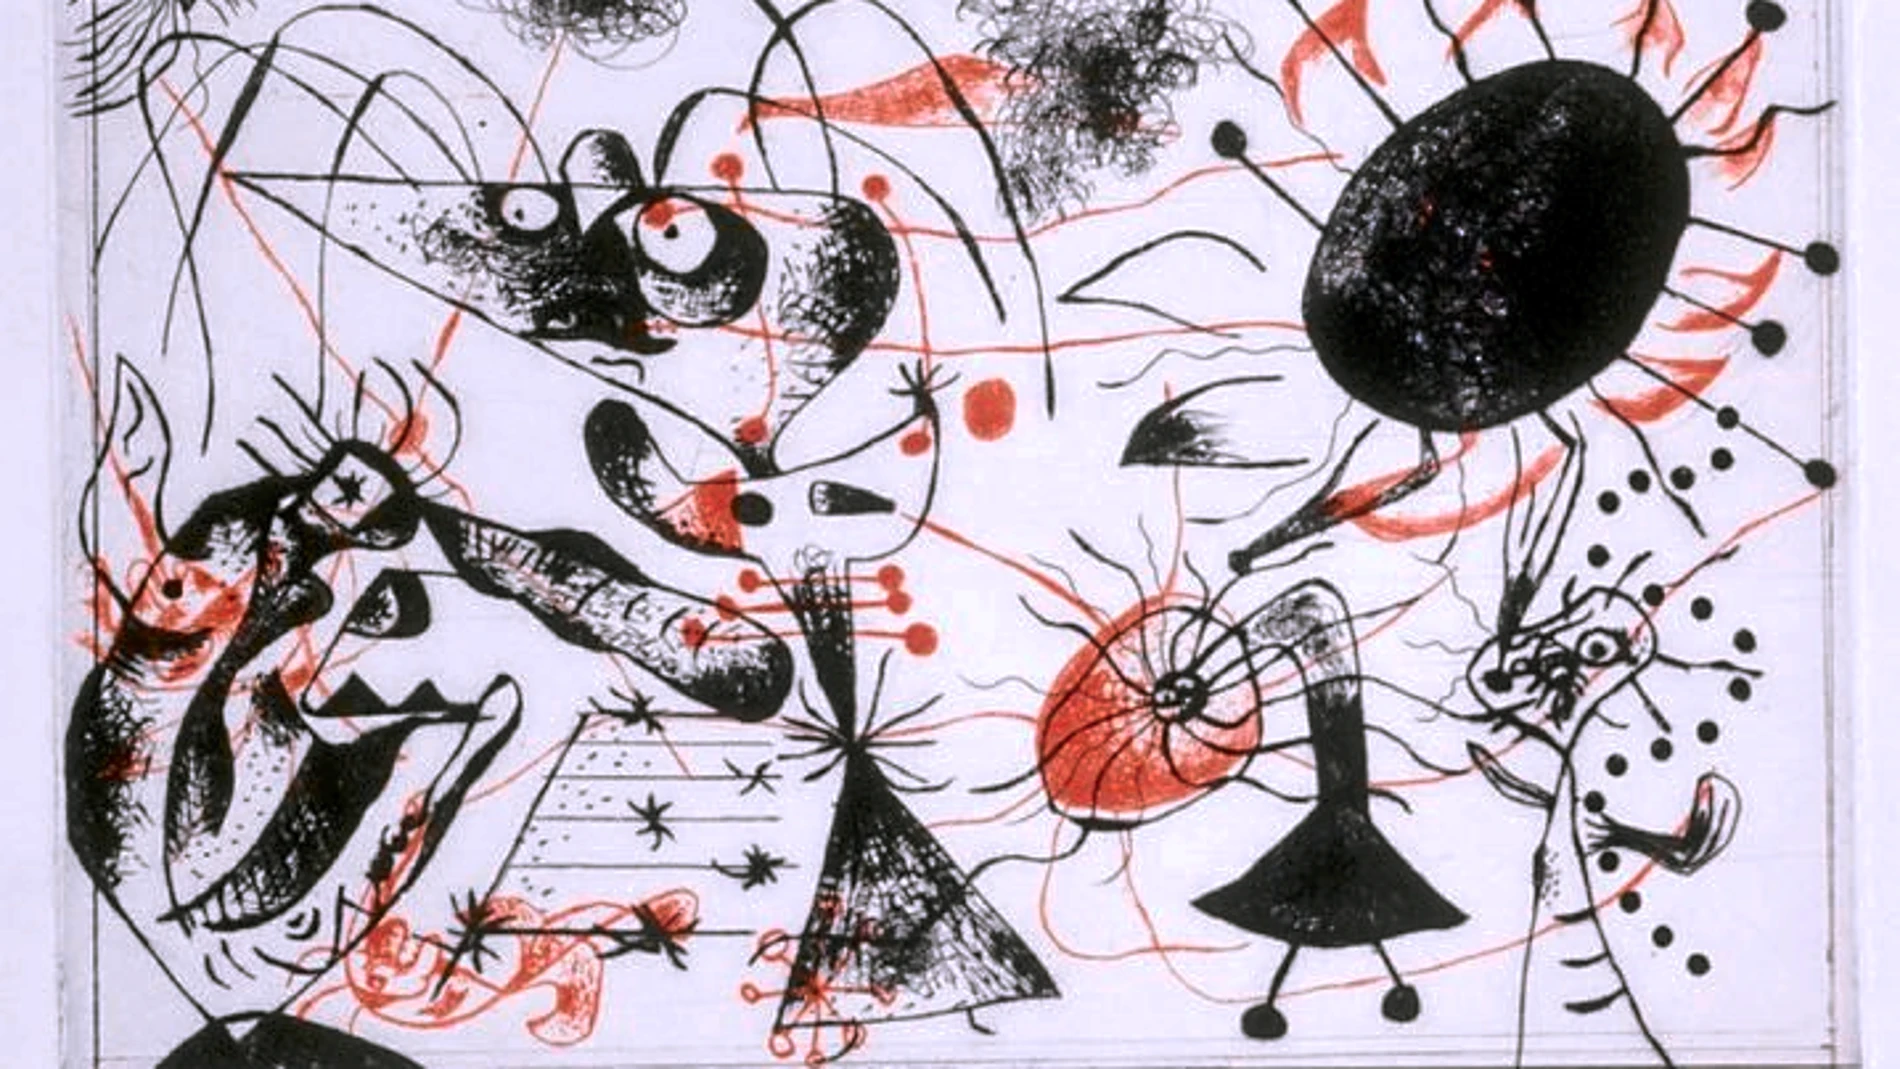 La exposición permite conocer la evolución de Joan Miró como grabador durante tres décadas